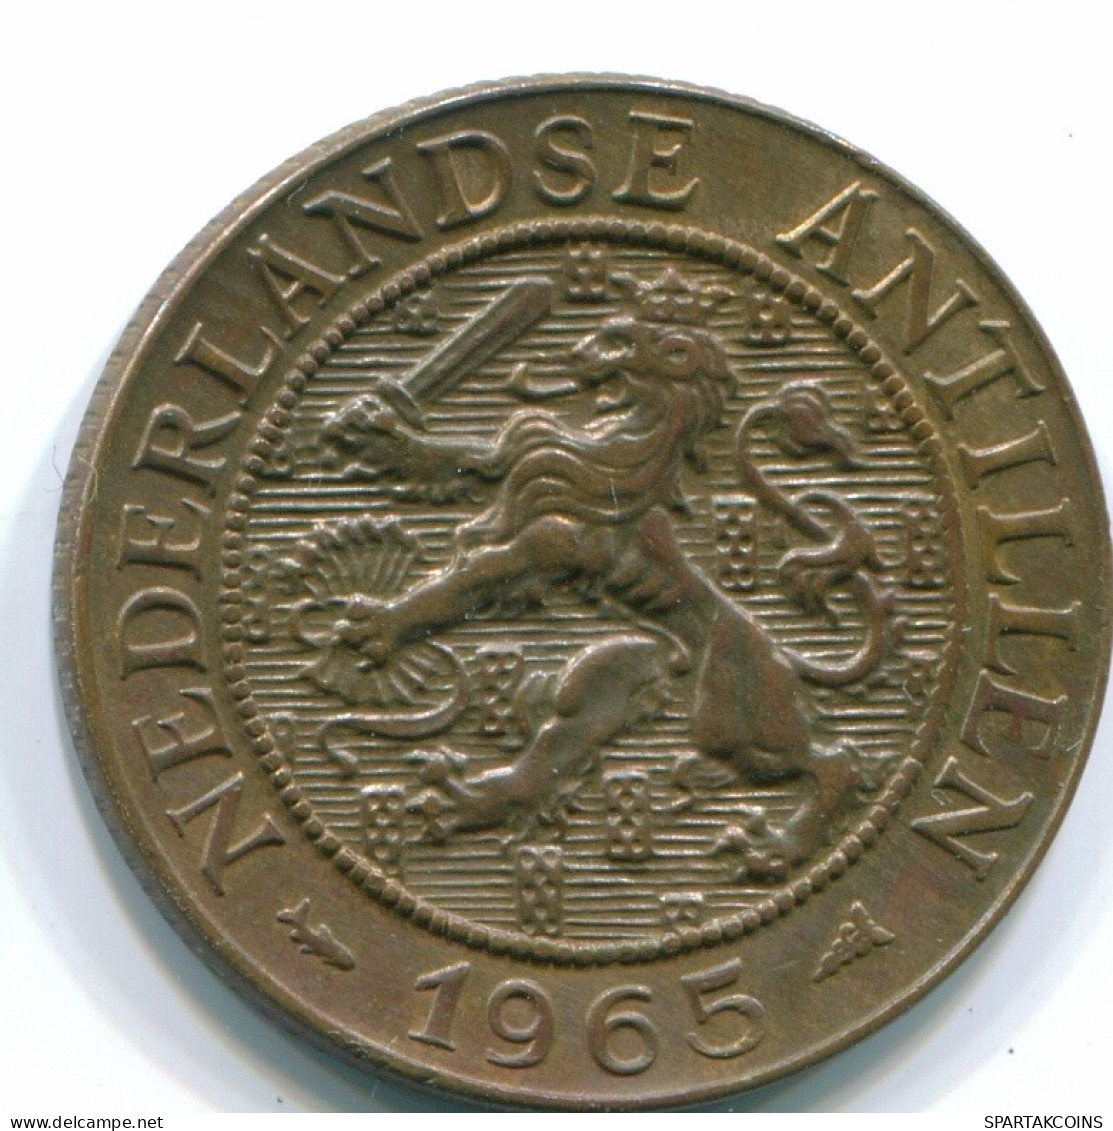 2 1/2 CENT 1965 CURACAO NIEDERLANDE NETHERLANDS Koloniale Münze #S10201.D.A - Curaçao